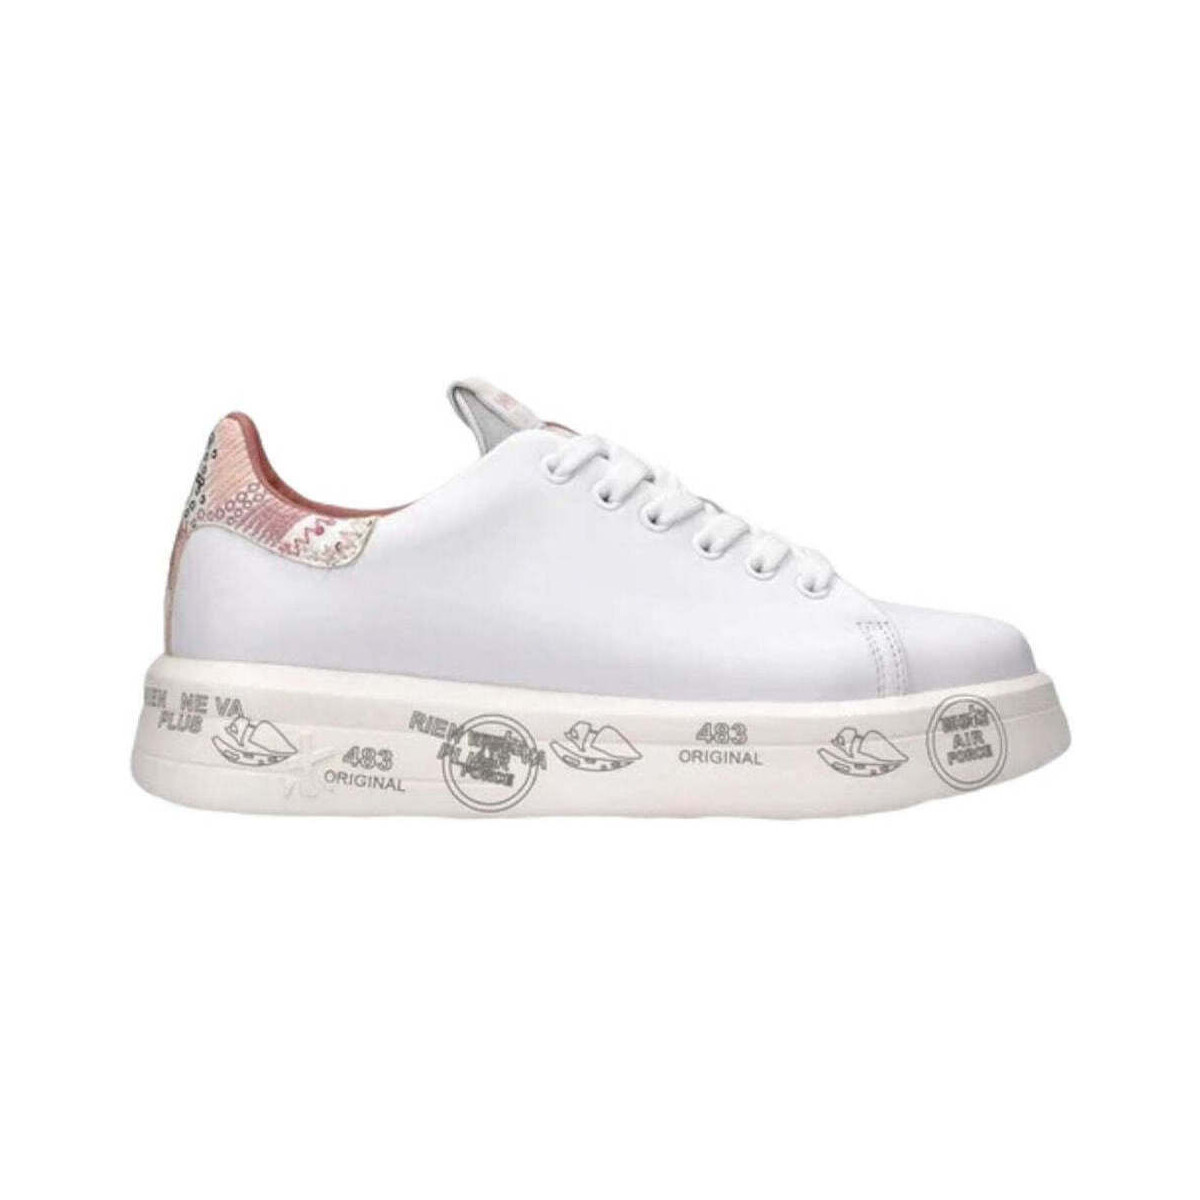 Scarpe Donna Sneakers Premiata Sneaker Donna Belle BELLE VAR 5721 Bianco Bianco